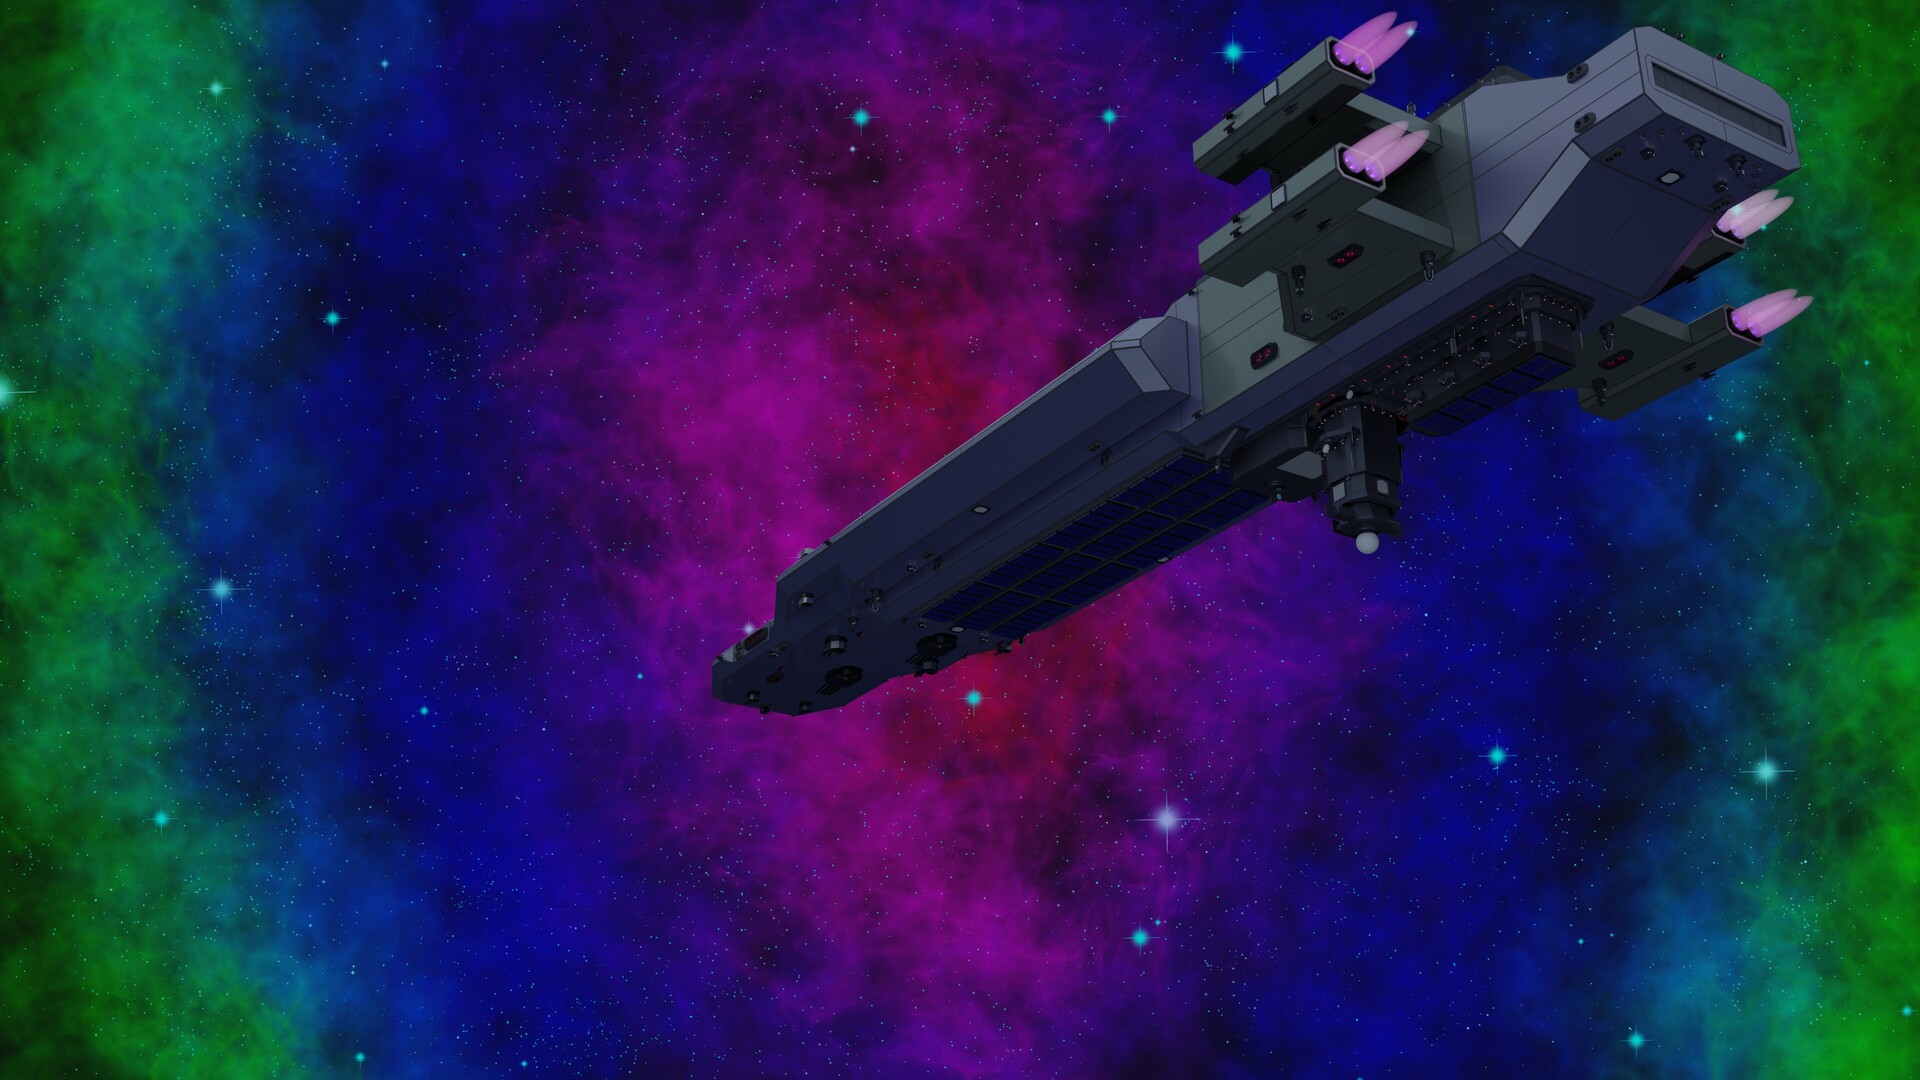 ArtStation - Tovor light Arsenal Ship Rear - Tàu vũ trụ Tovor Light Arsenal Ship. Nếu bạn đam mê thiết kế tàu vũ trụ, thì đây là hình ảnh hoàn hảo cho bạn. Tovor Light Arsenal Ship đem lại cảm giác tuyệt vời về tốc độ và sự hiện đại. Hãy ngắm nhìn và cảm nhận sự tuyệt vời trong thiết kế của tàu vũ trụ này trên trang web ArtStation.